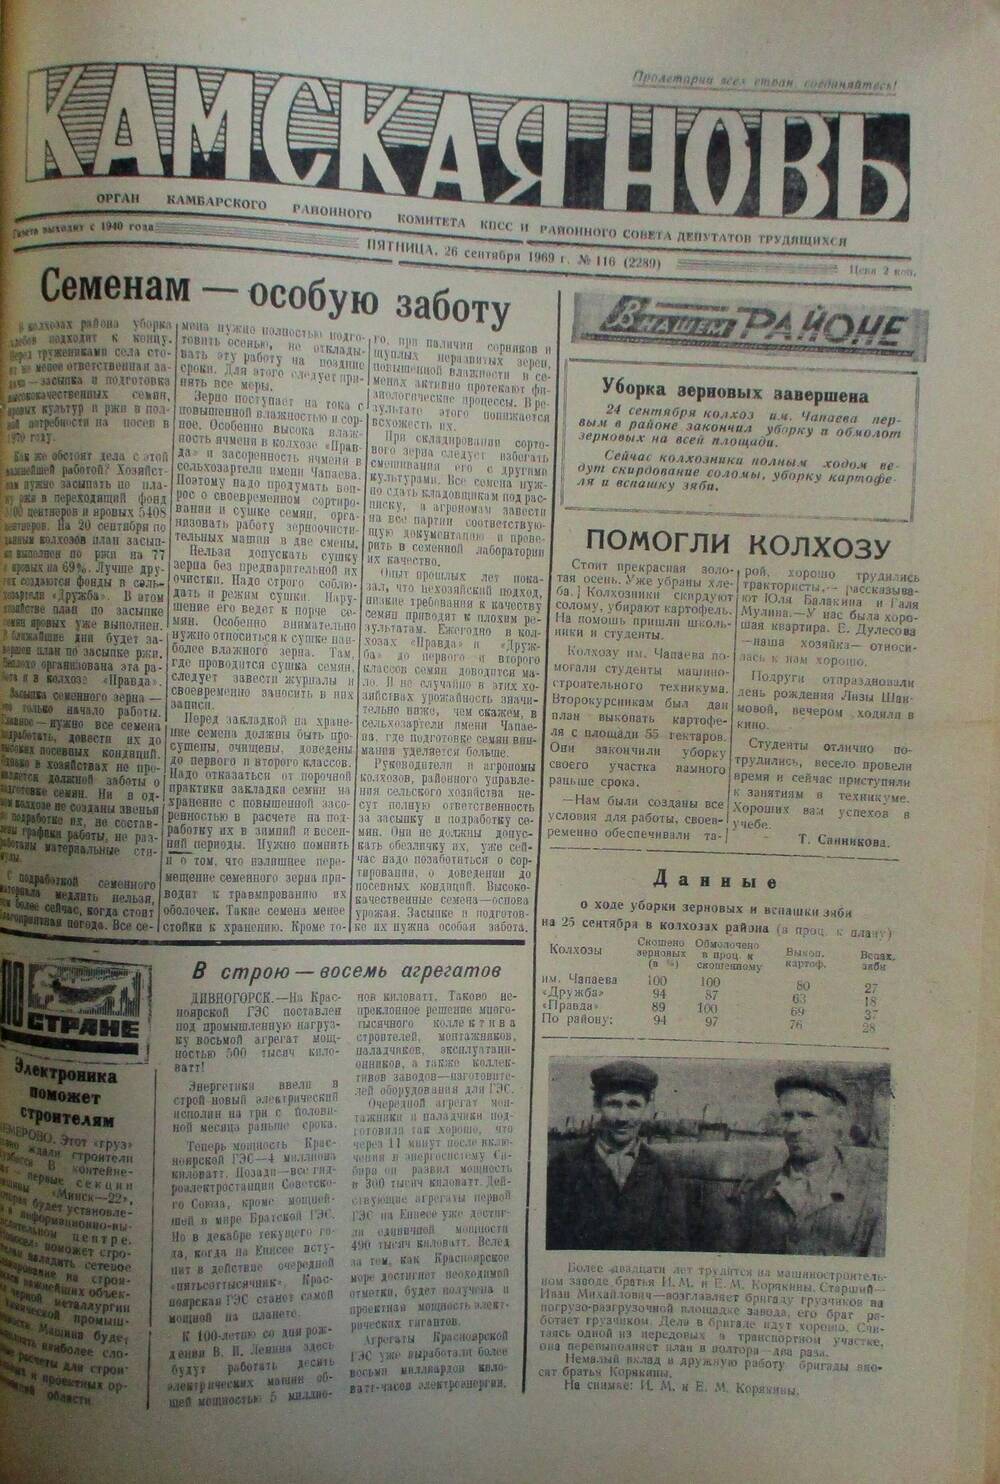 Газеты Камская новь за 1969 год, орган Камбарского райсовета и  РККПСС, с №1 по №66, с №68 по №156. №116.